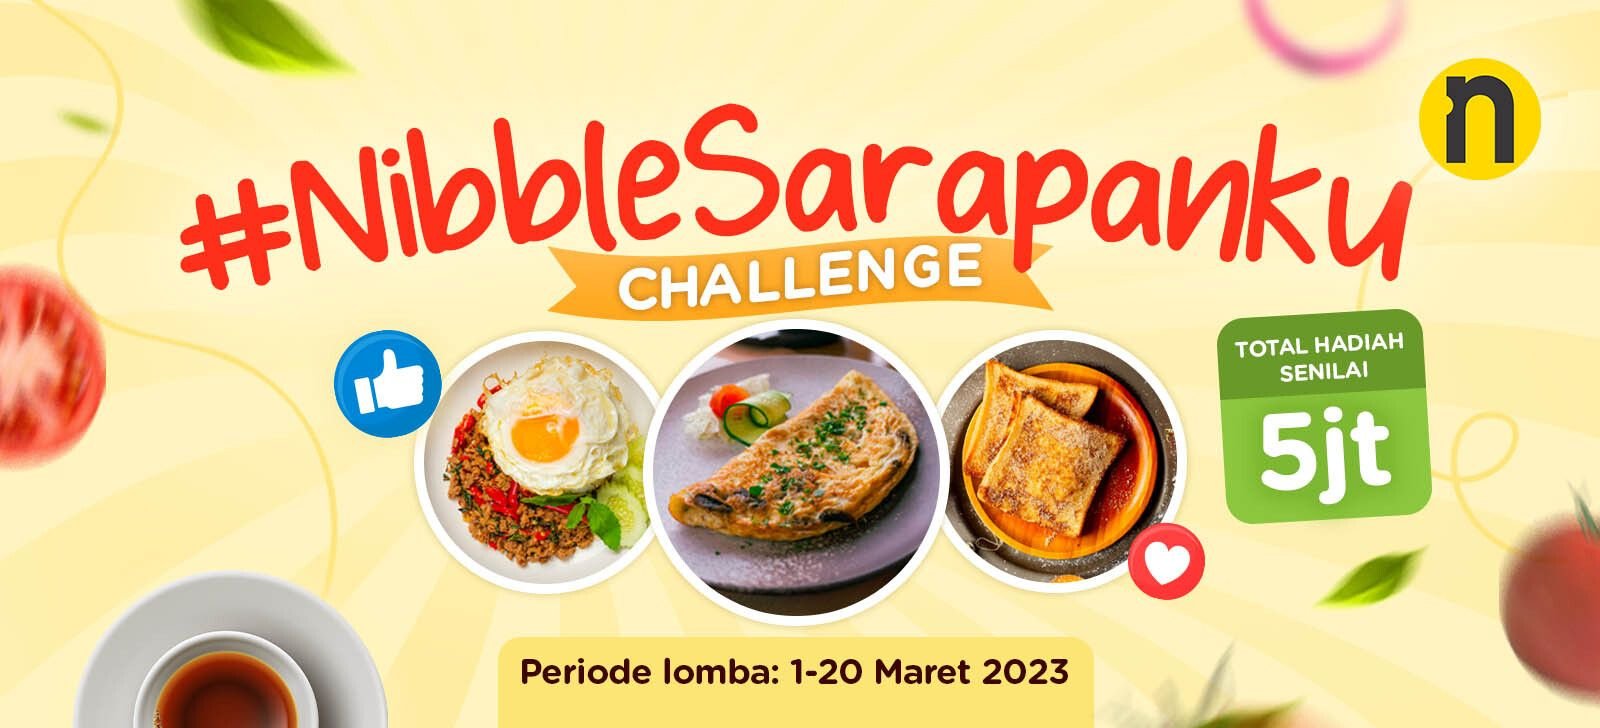 #NibbleSarapanku Challenge Berhadiah Total 5 Juta Rupiah!